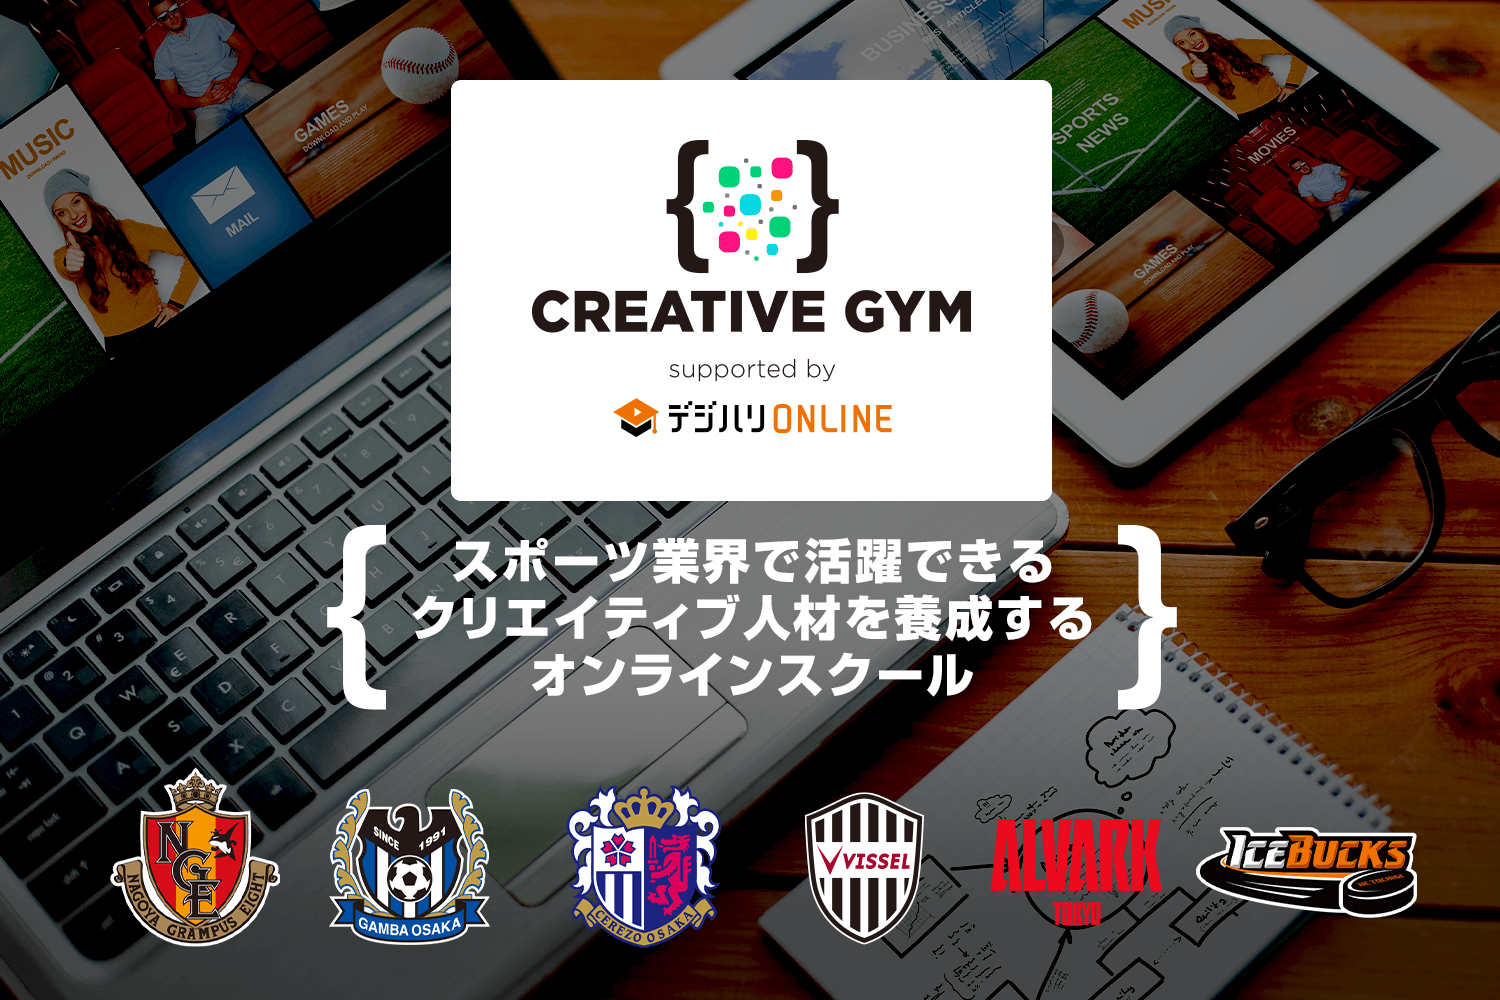 スポーツ特化のクリエイティブスキルが学べる Creative Gym に J1リーグ ヴィッセル神戸 の協力が決定 株式会社フロムワンのプレスリリース